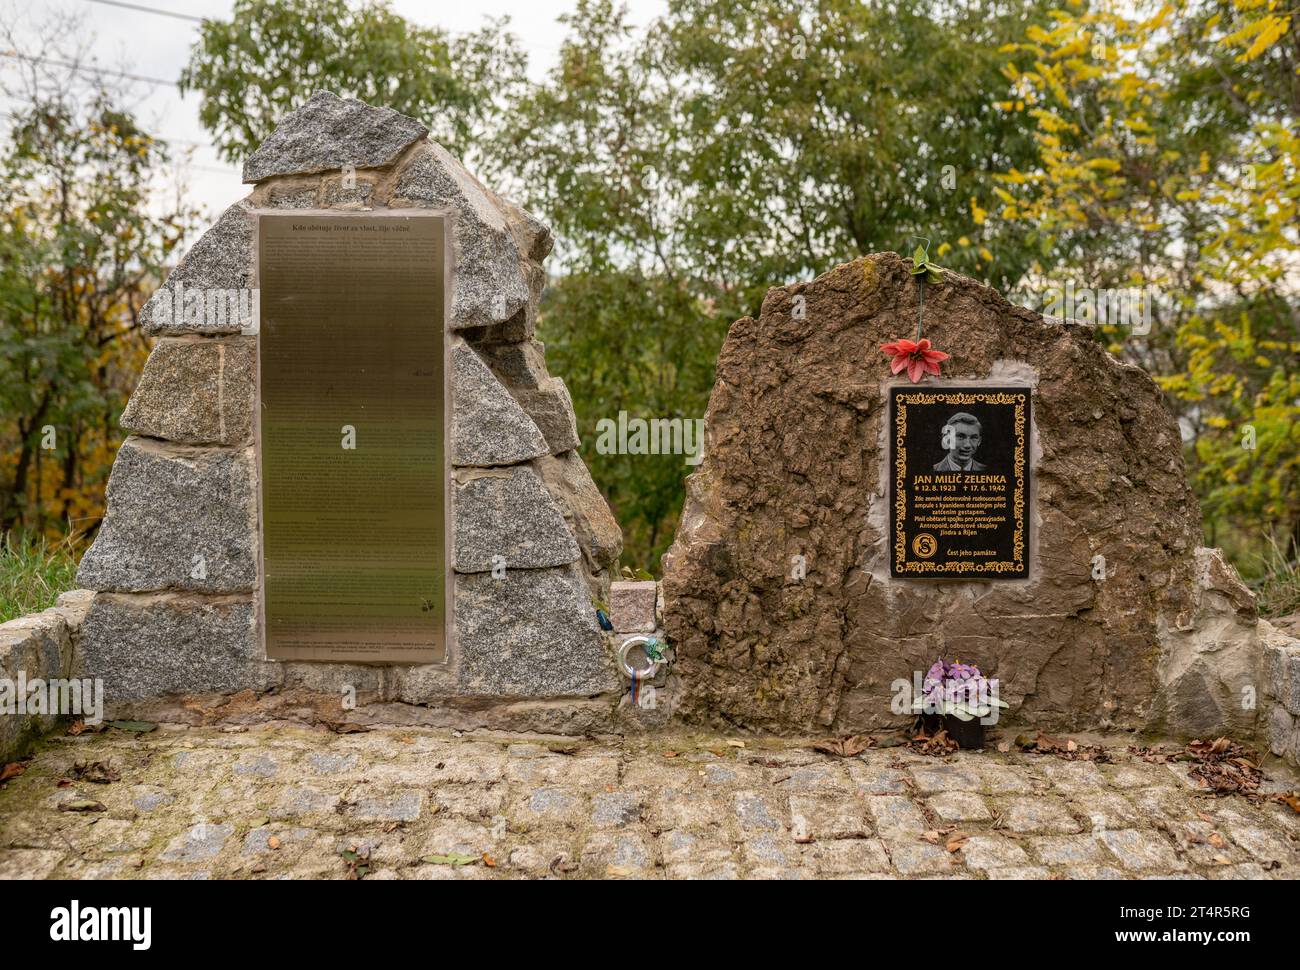 Monumento in pietra a Jan Milíč Zelenka, partecipante alla resistenza ceca della seconda guerra mondiale, e collegamento con i paracadutisti antropoidi, al posto del suo suicidio a Praga. Foto Stock